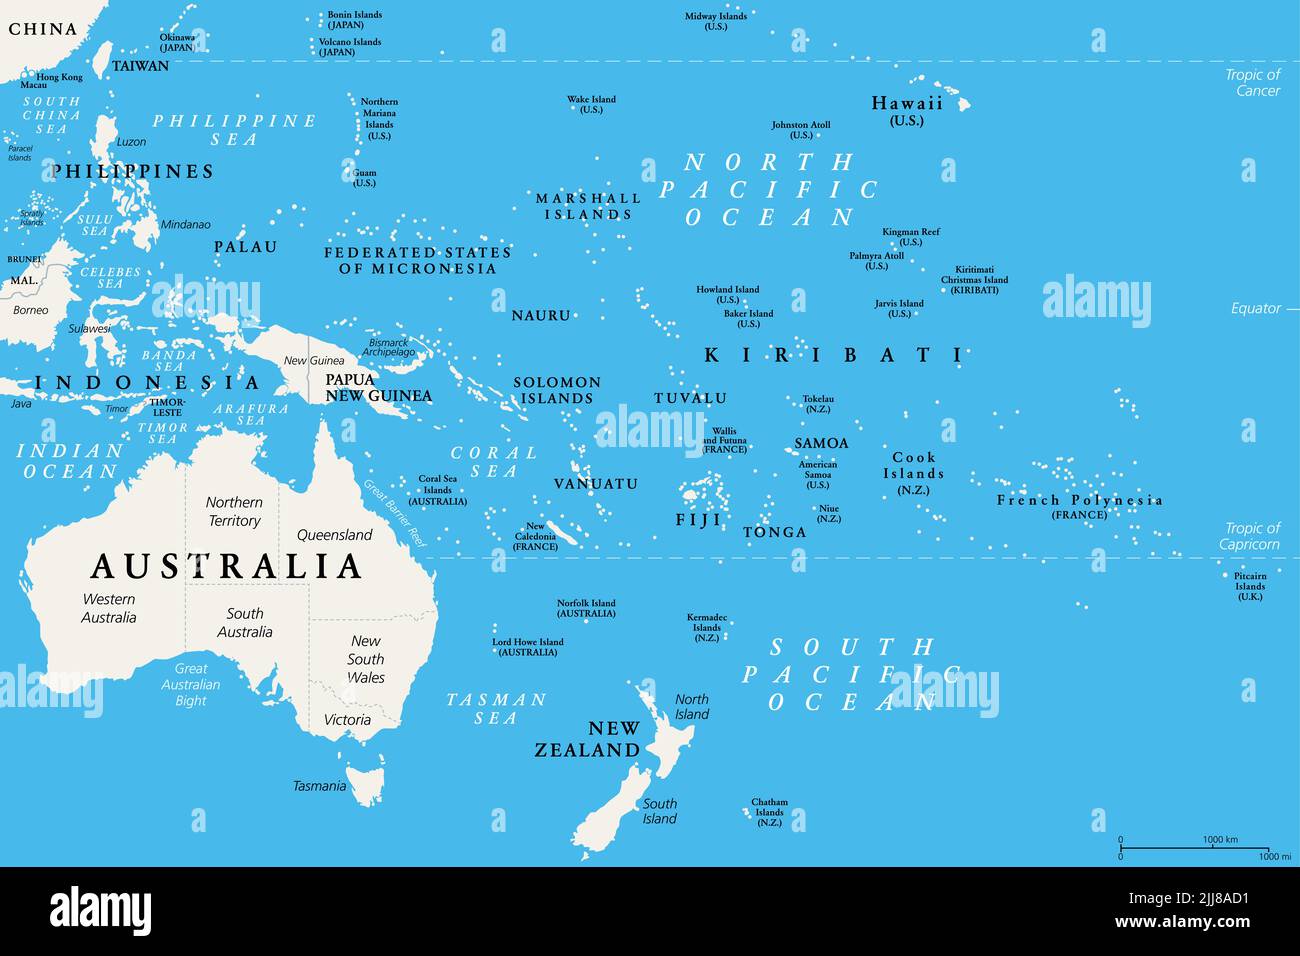 Océanie, carte politique. Australie et Pacifique, y compris la Nouvelle-Zélande. Région géographique, au sud-est de la région Asie-Pacifique. Banque D'Images